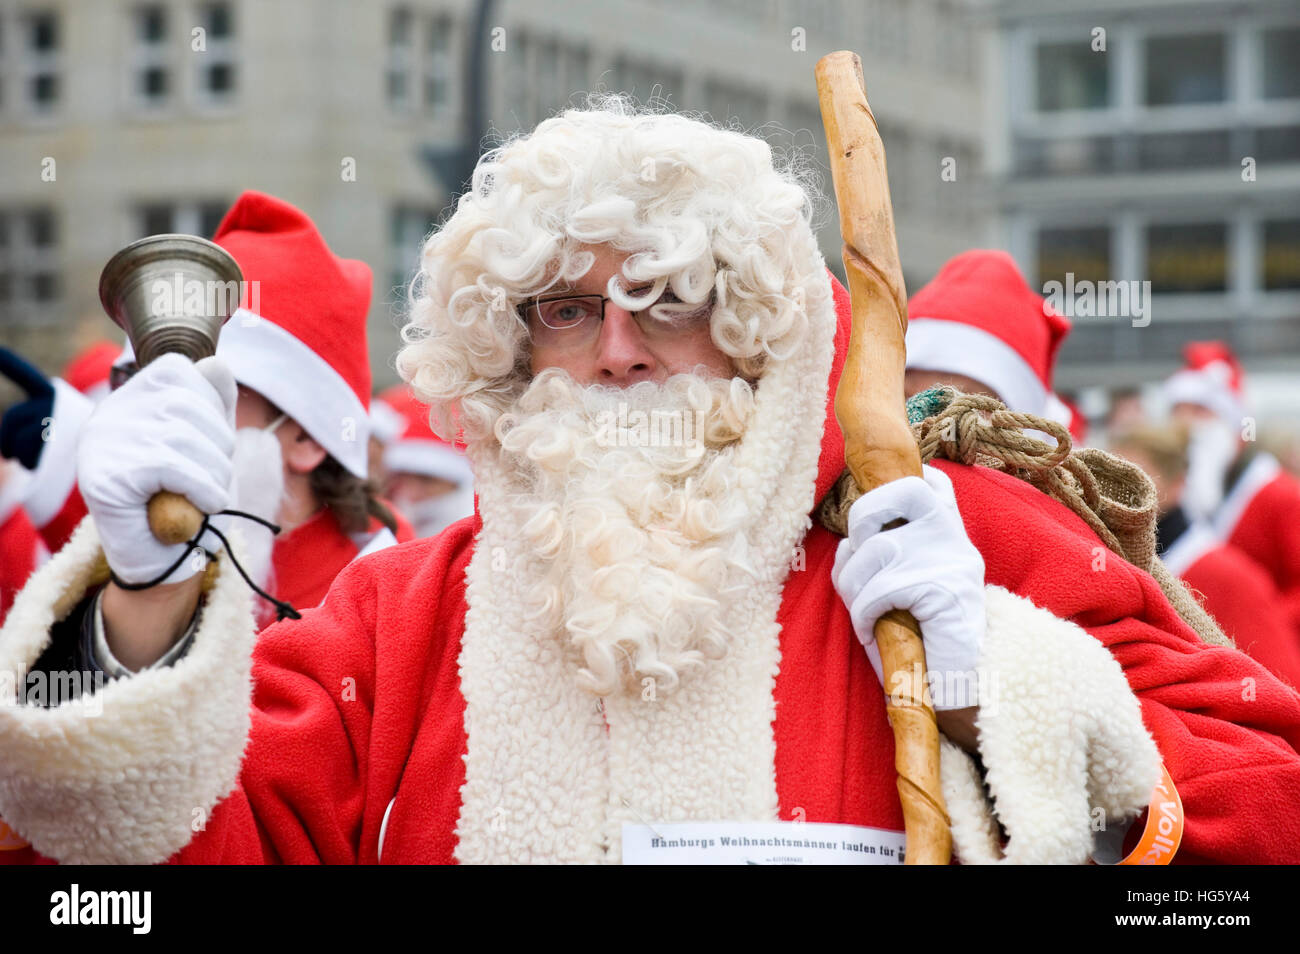 Lauf Santa Lauf (Lauf, Santa, Lauf): Versuch, einen Weltrekord für das größte Weihnachtsmann-Rennen am 16. Dezember Stockfoto